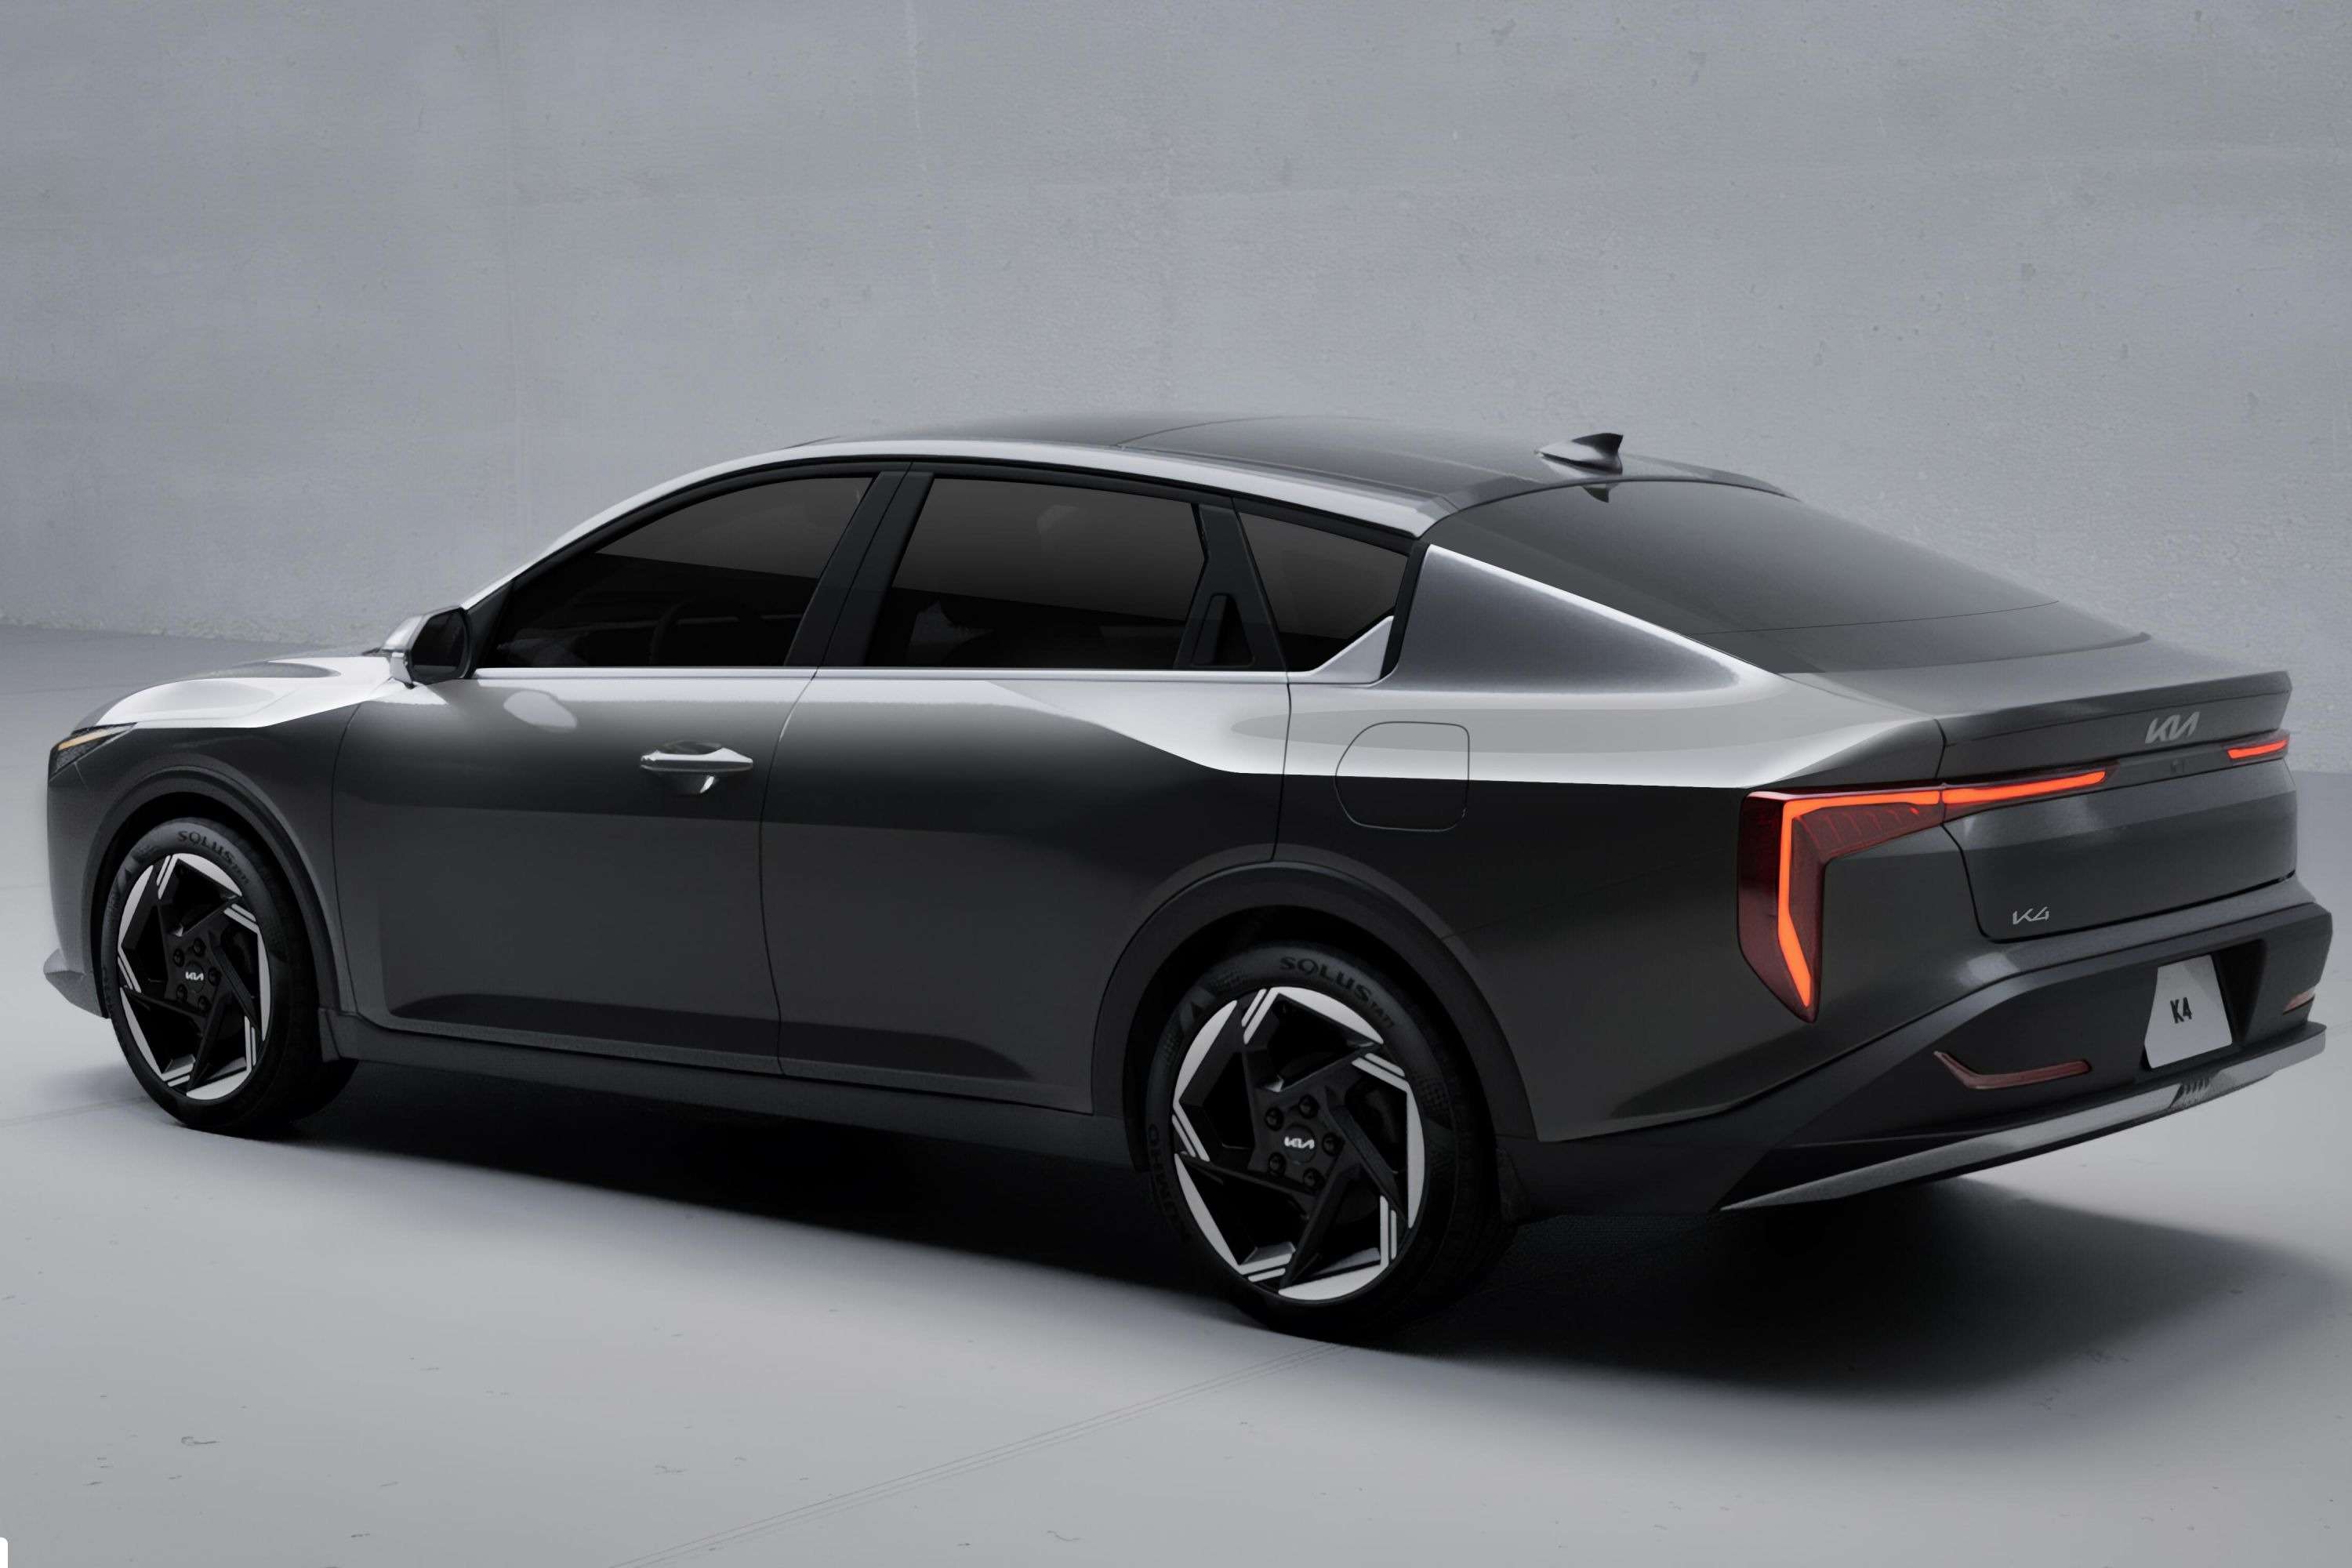 सेडान कार: Kia K4 के नेक्स्ट जेनरेशन मॉडल का धांसू लुक आया सामने, जानें कब लॉन्च होगी ये कार	